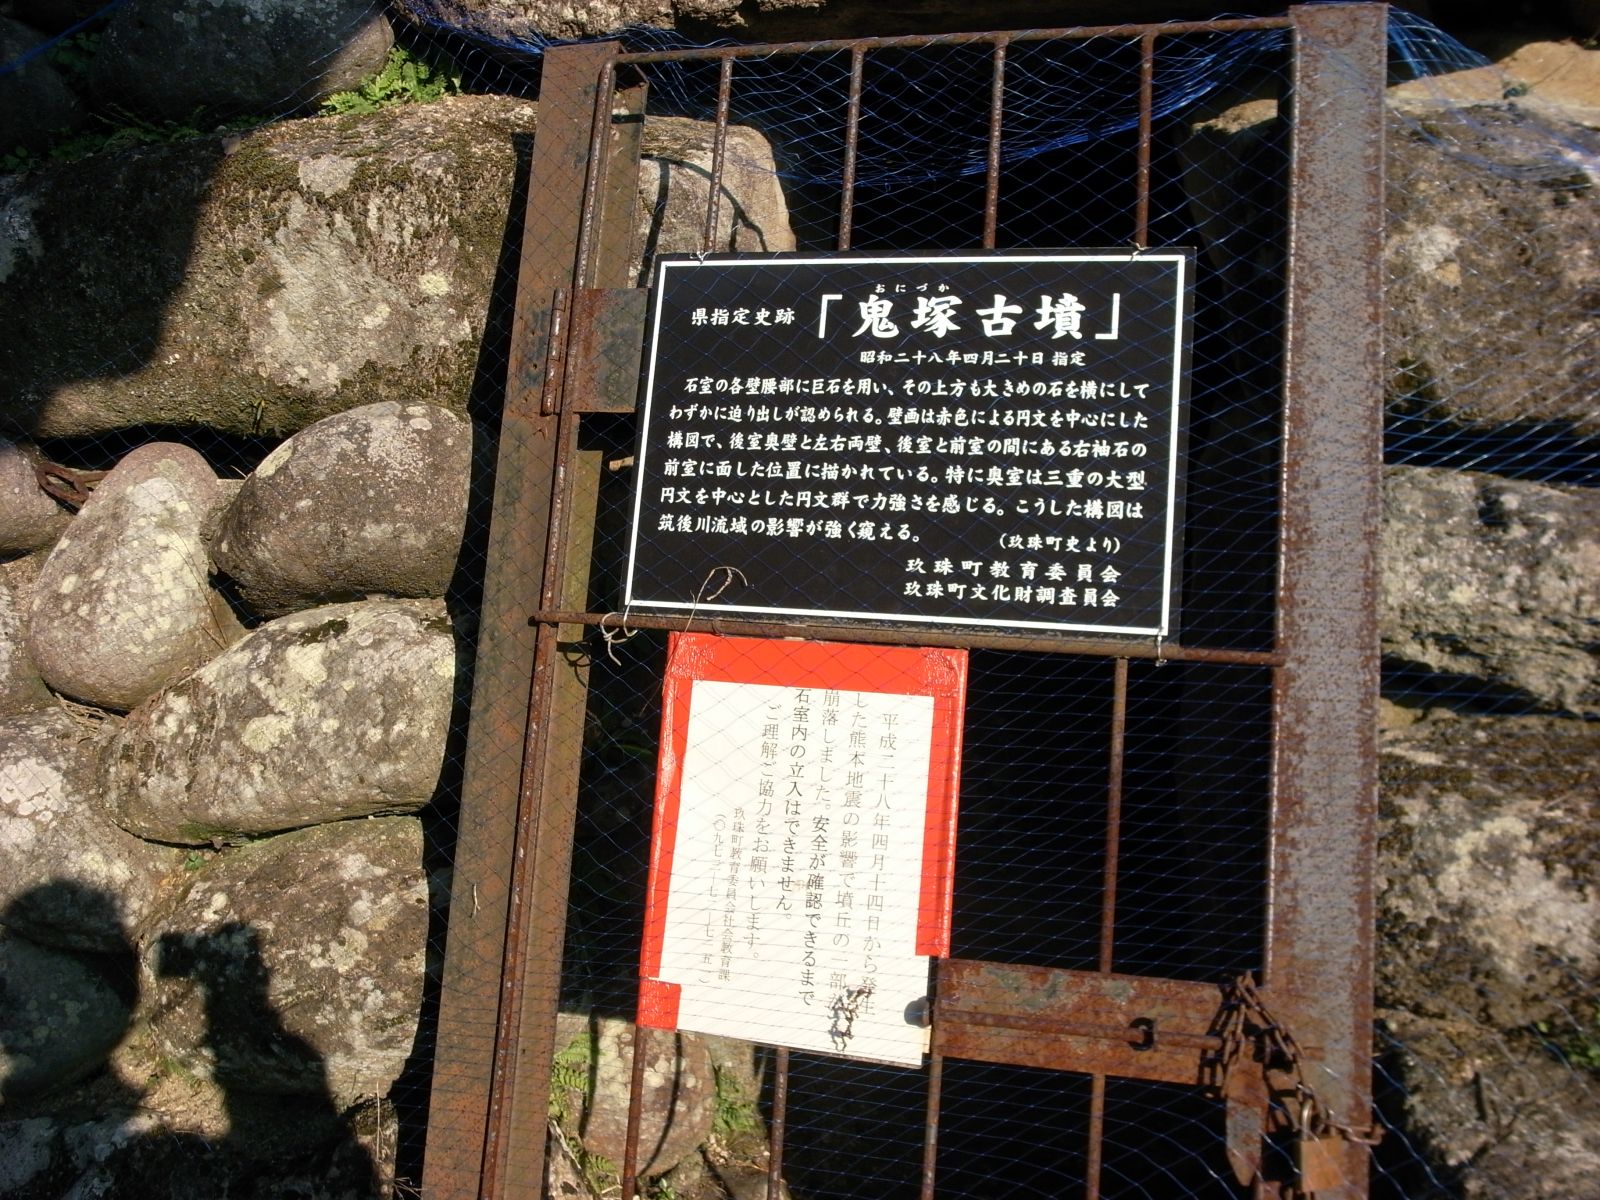 熊本地震の為出入り禁止、自由に出入りでき